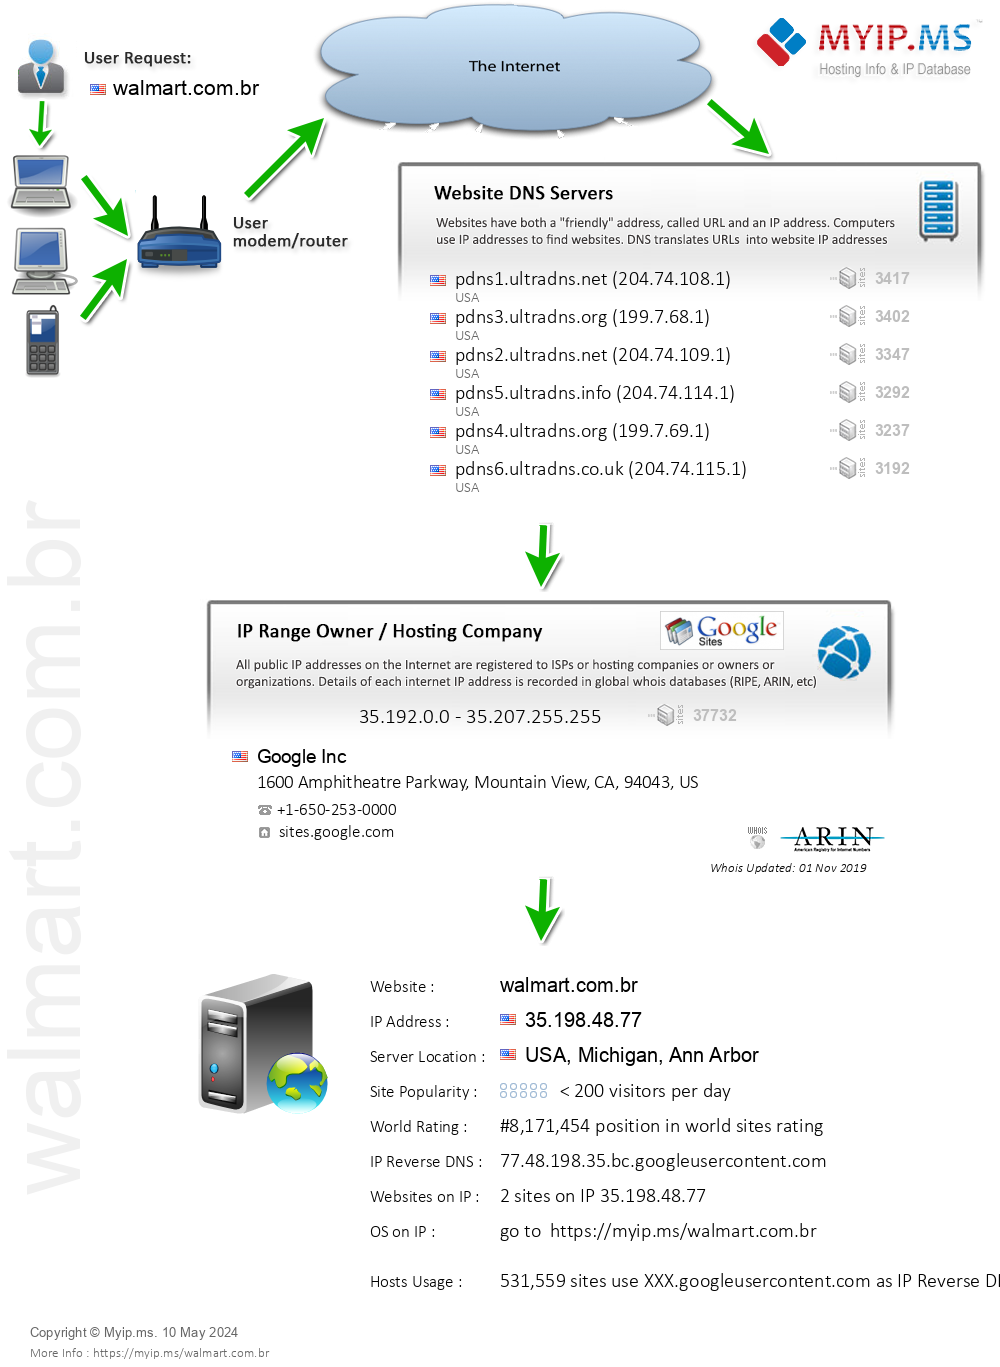 Walmart.com.br - Website Hosting Visual IP Diagram